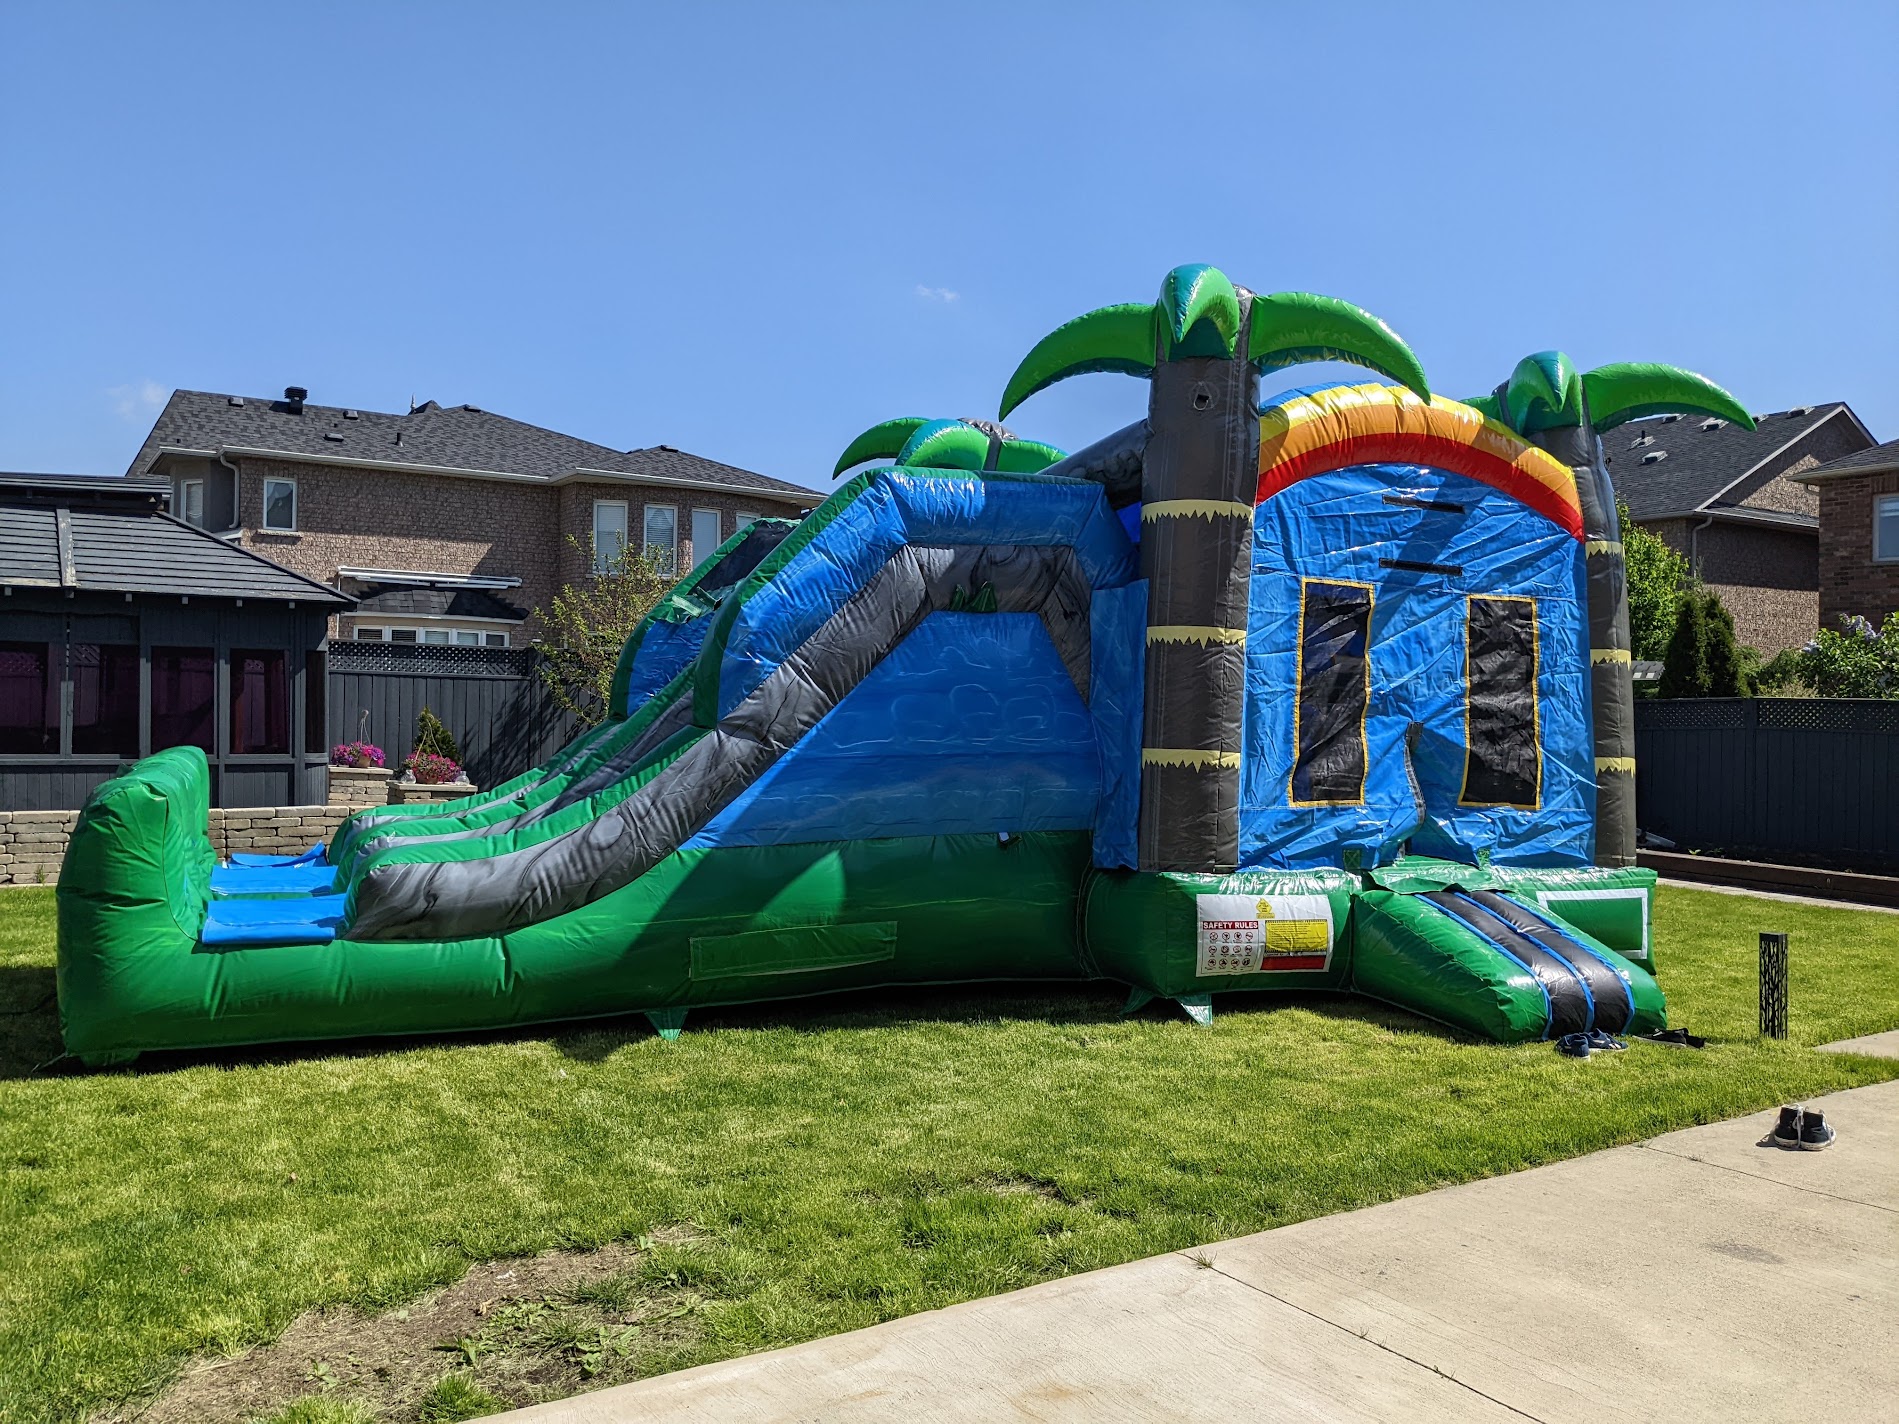 The Double Slide  bouncy castle = Double Trouble